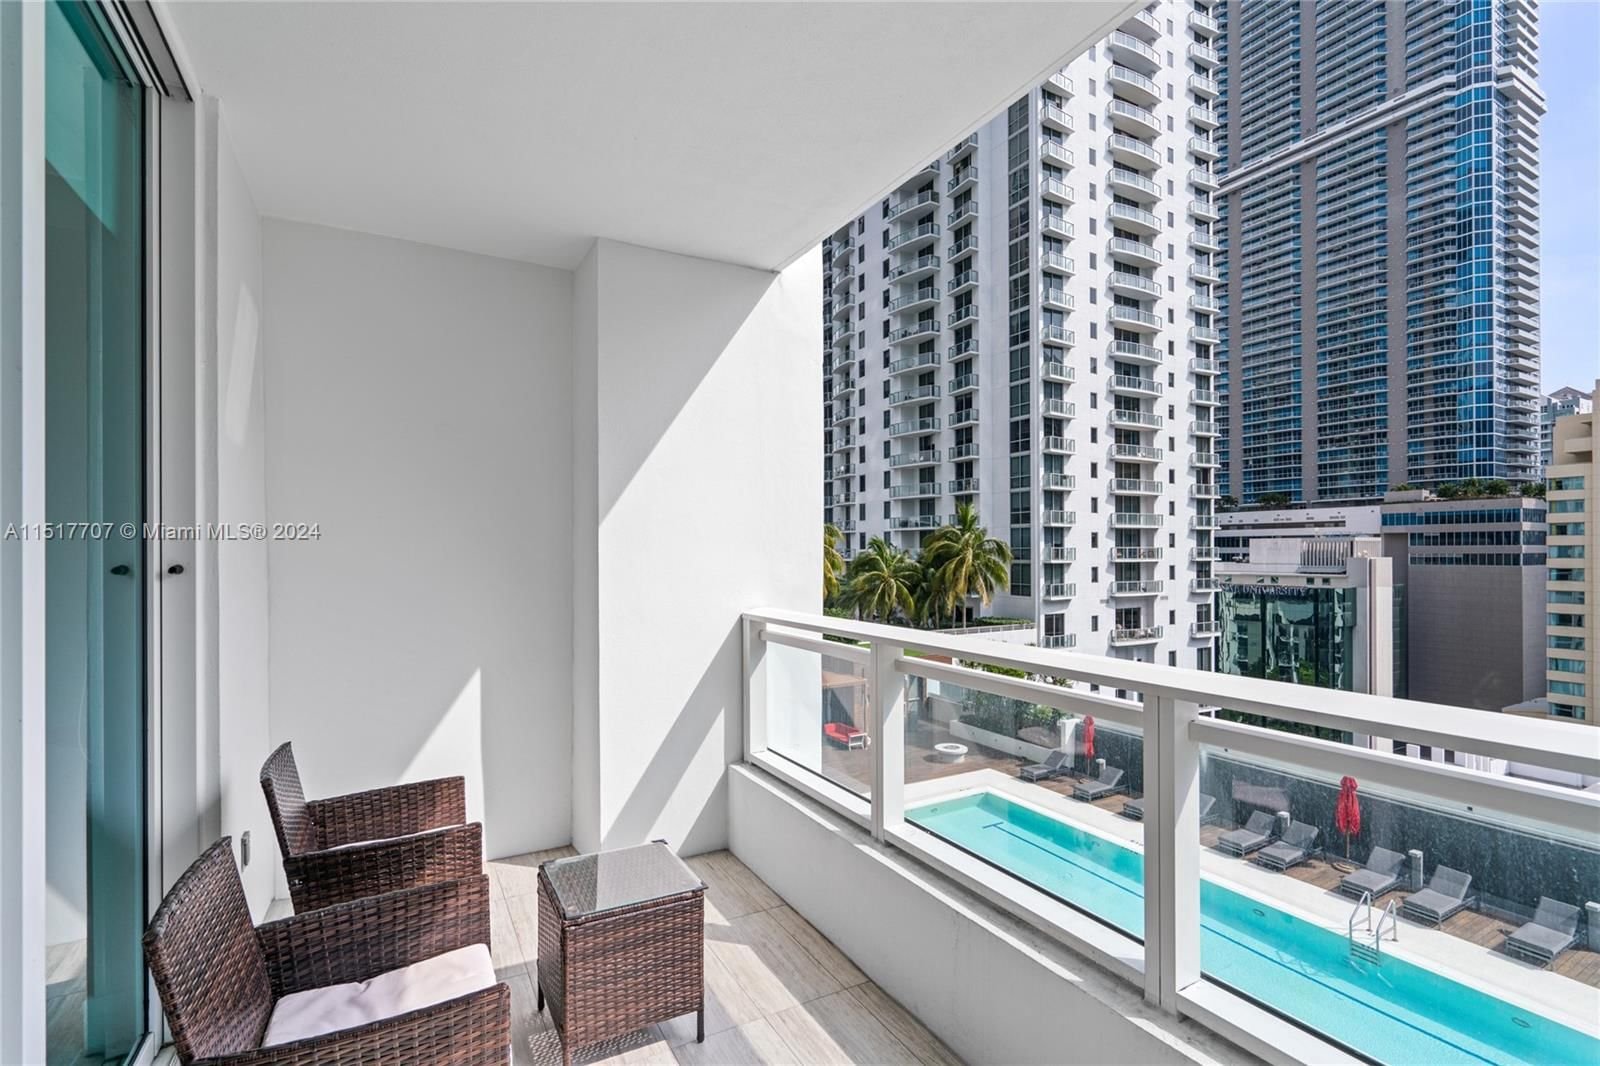 Real estate property located at 1080 Brickell Ave #1502, Miami-Dade County, THE BONDO (1080 BRICKELL), Miami, FL